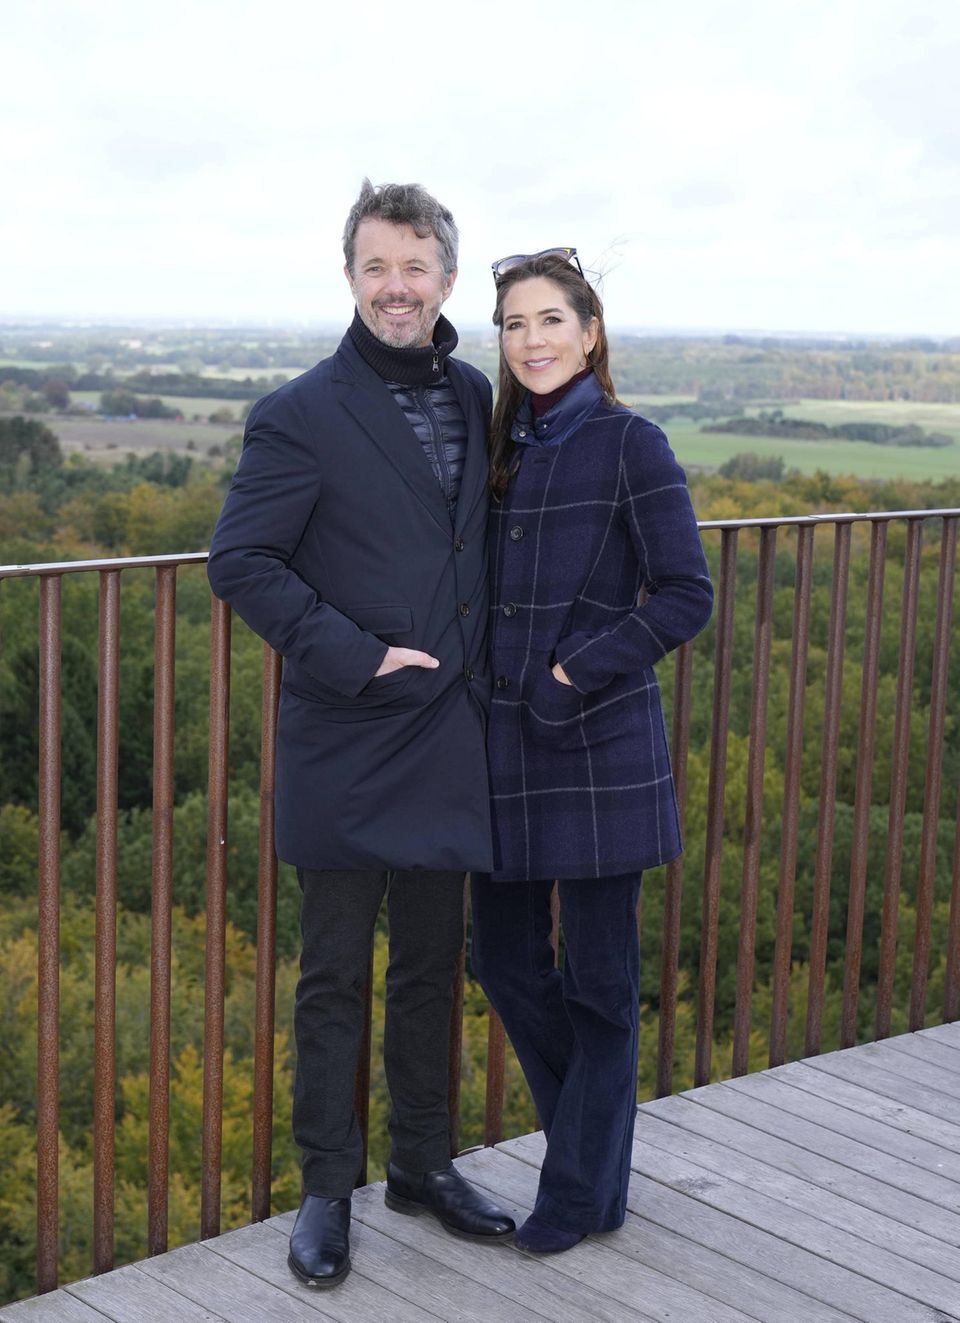 RTK: Kronprinzenpaar Frederik und Mary bei Besuch des Waldturms